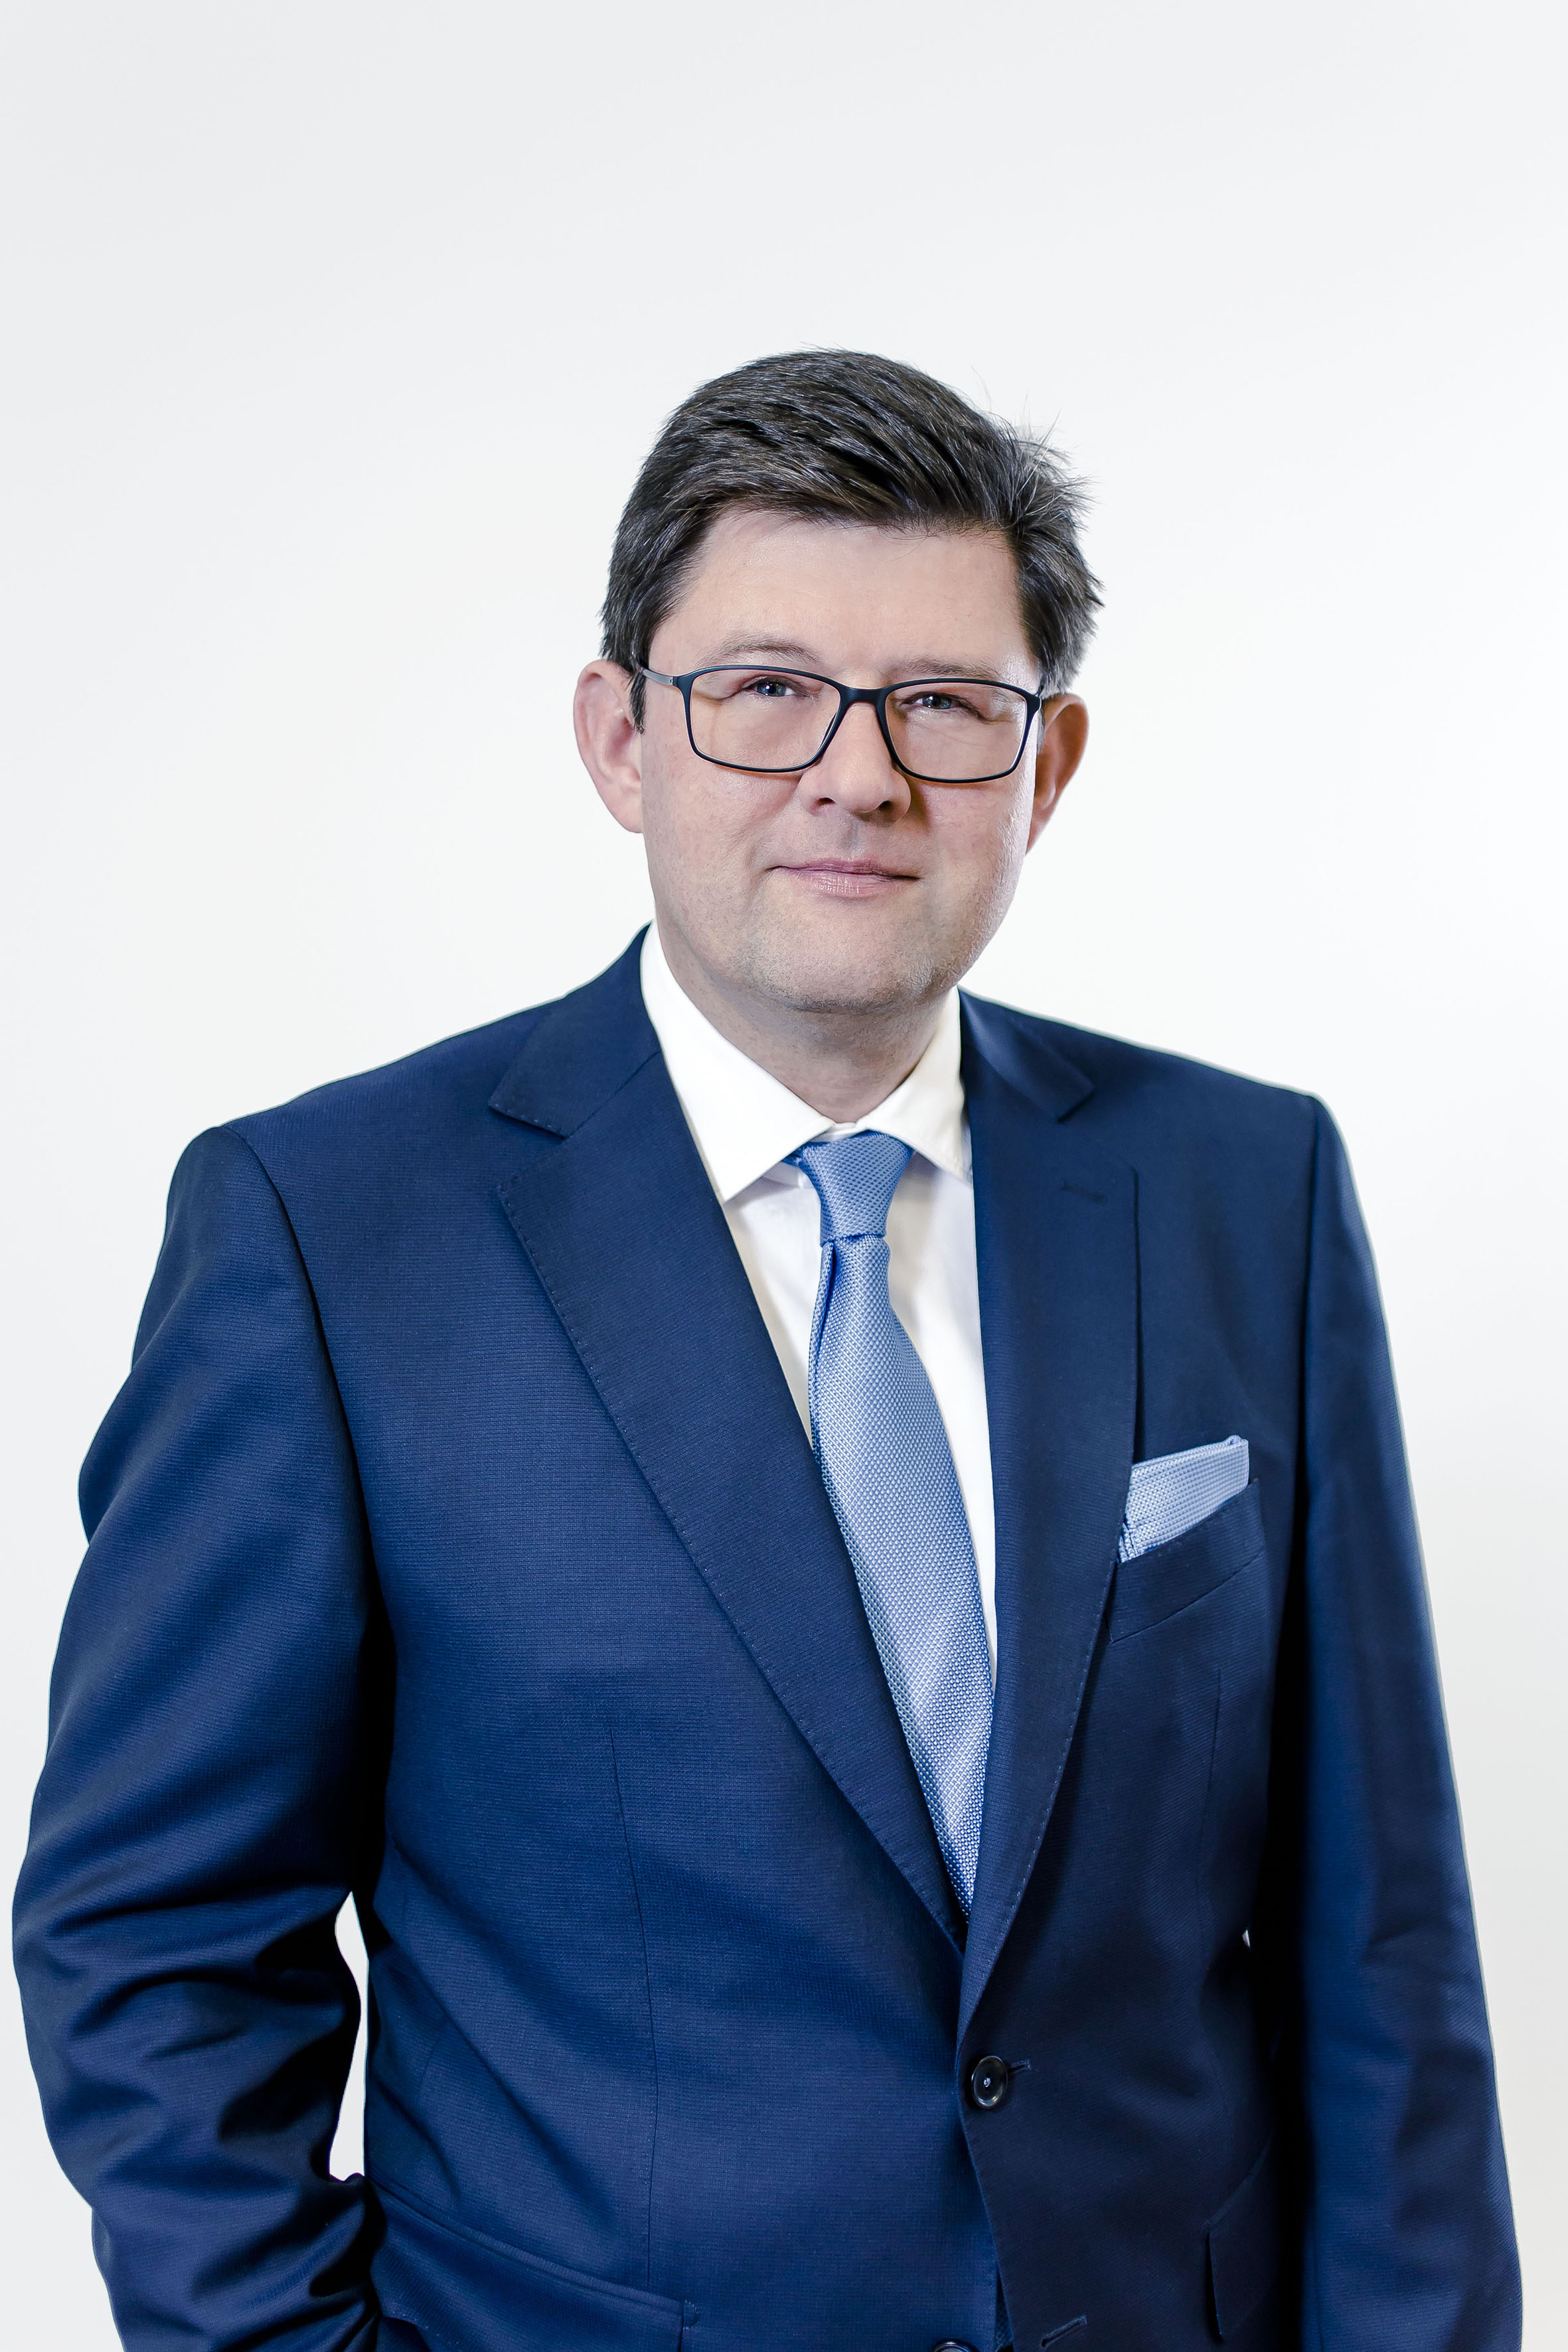 Klaus Schröter, chairman of the IFFA advisory board